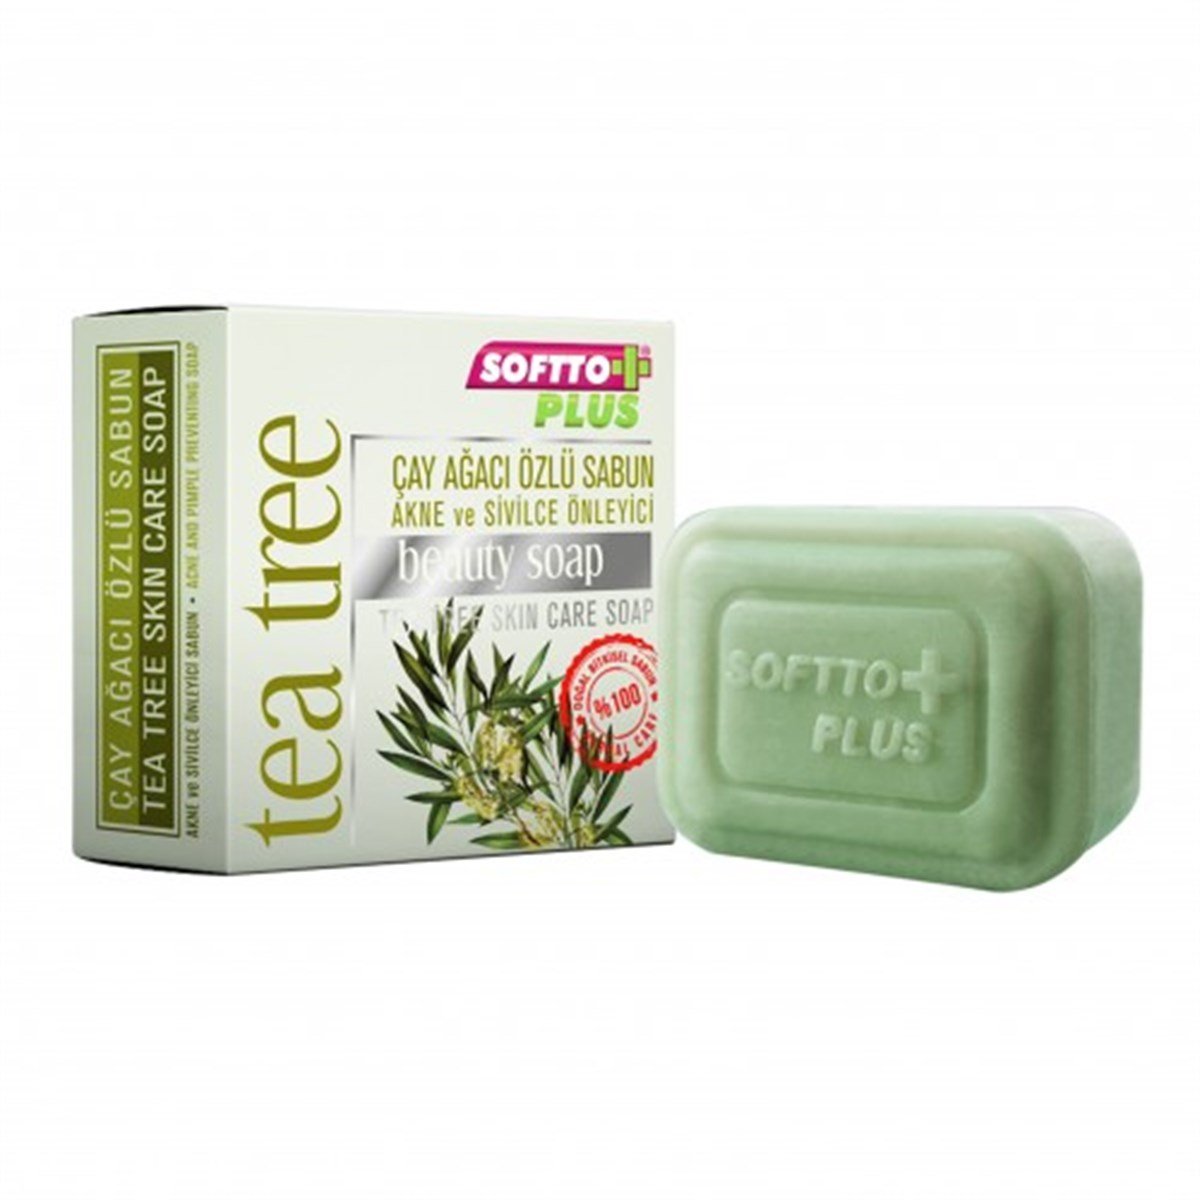 Softto Plus Çay Ağacı Özlü Akne Ve Sivilce Önleyici Sabun 100 gr